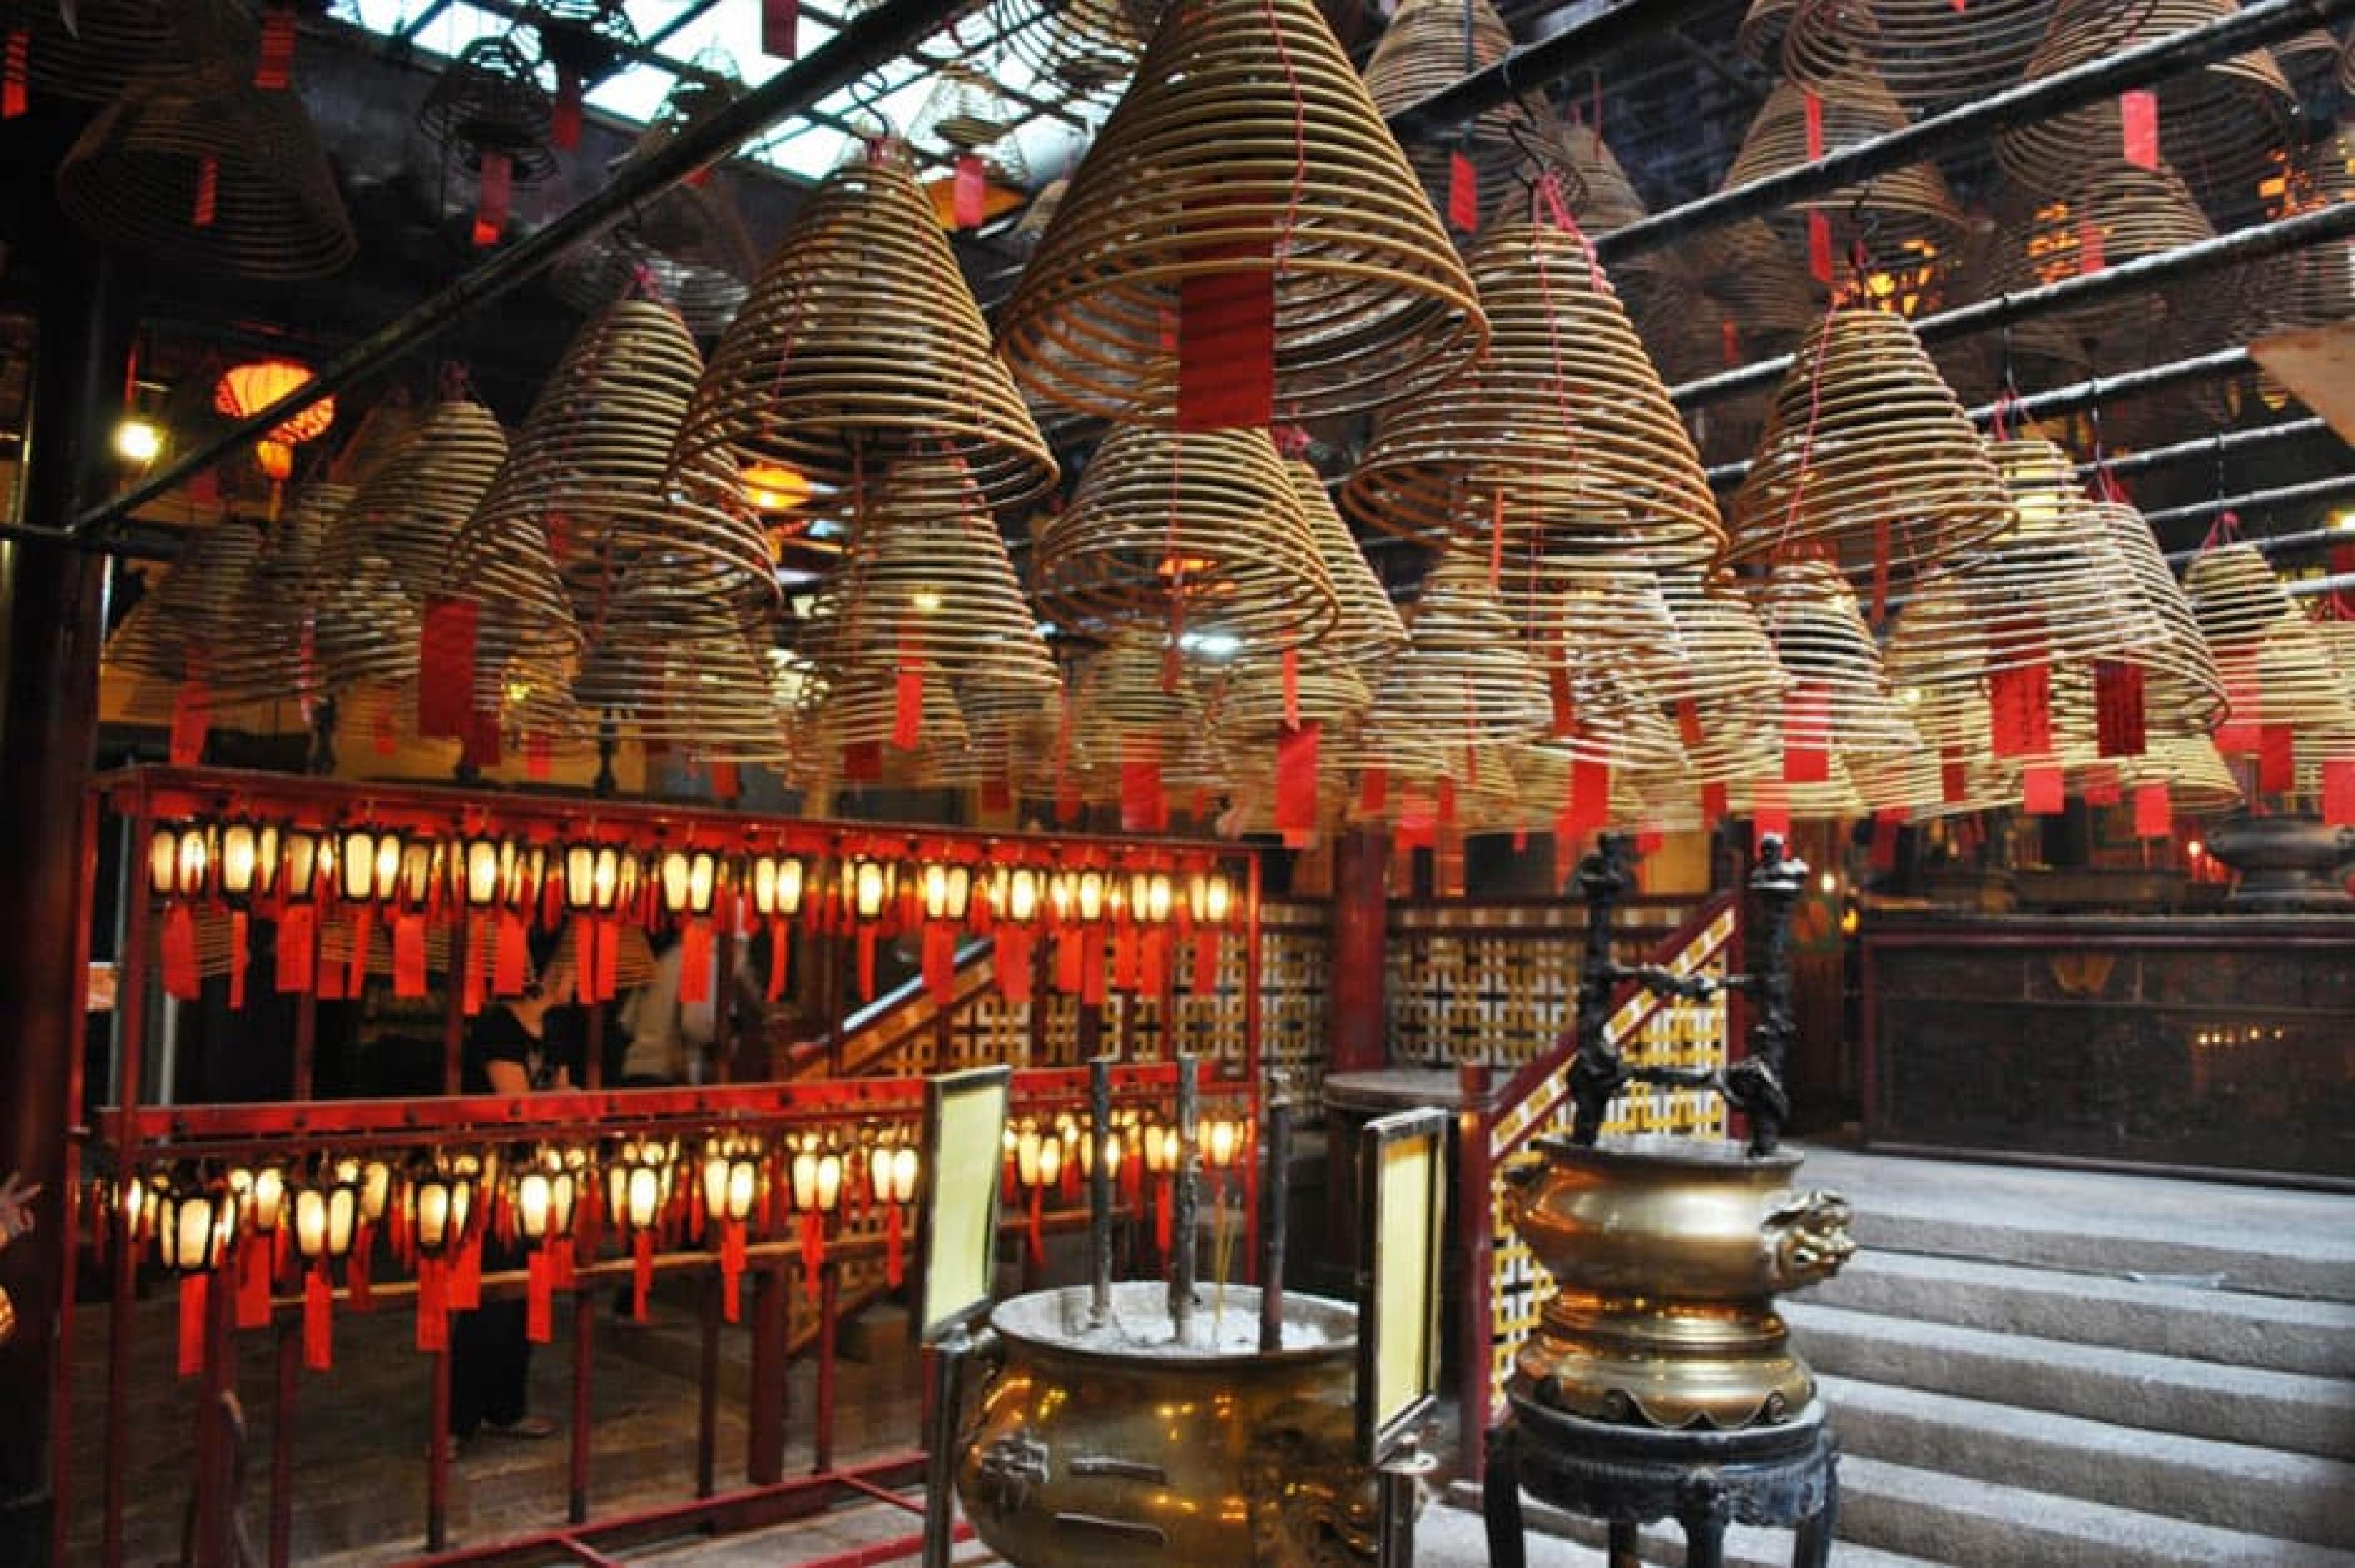 Interior Veiw at Man Mo Temple & Sheung Wan  , Hong Kong, China , Photo by Elisa Rolle